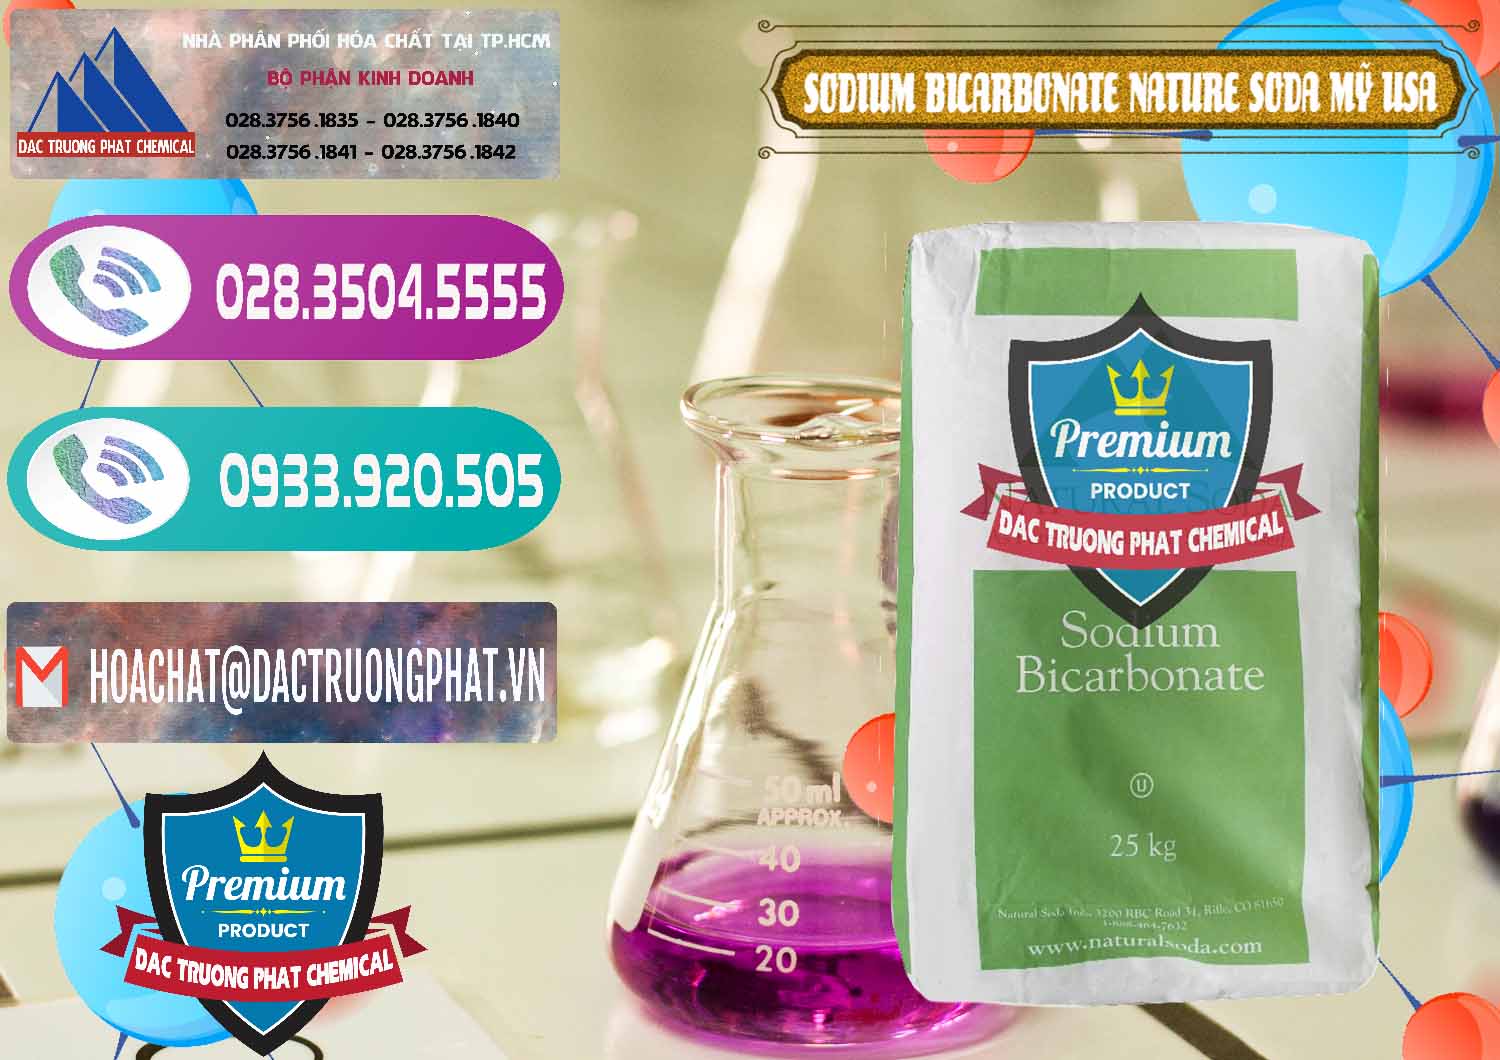 Chuyên bán và cung ứng Sodium Bicarbonate – Bicar NaHCO3 Food Grade Nature Soda Mỹ USA - 0256 - Nơi chuyên cung cấp - bán hóa chất tại TP.HCM - hoachatxulynuoc.com